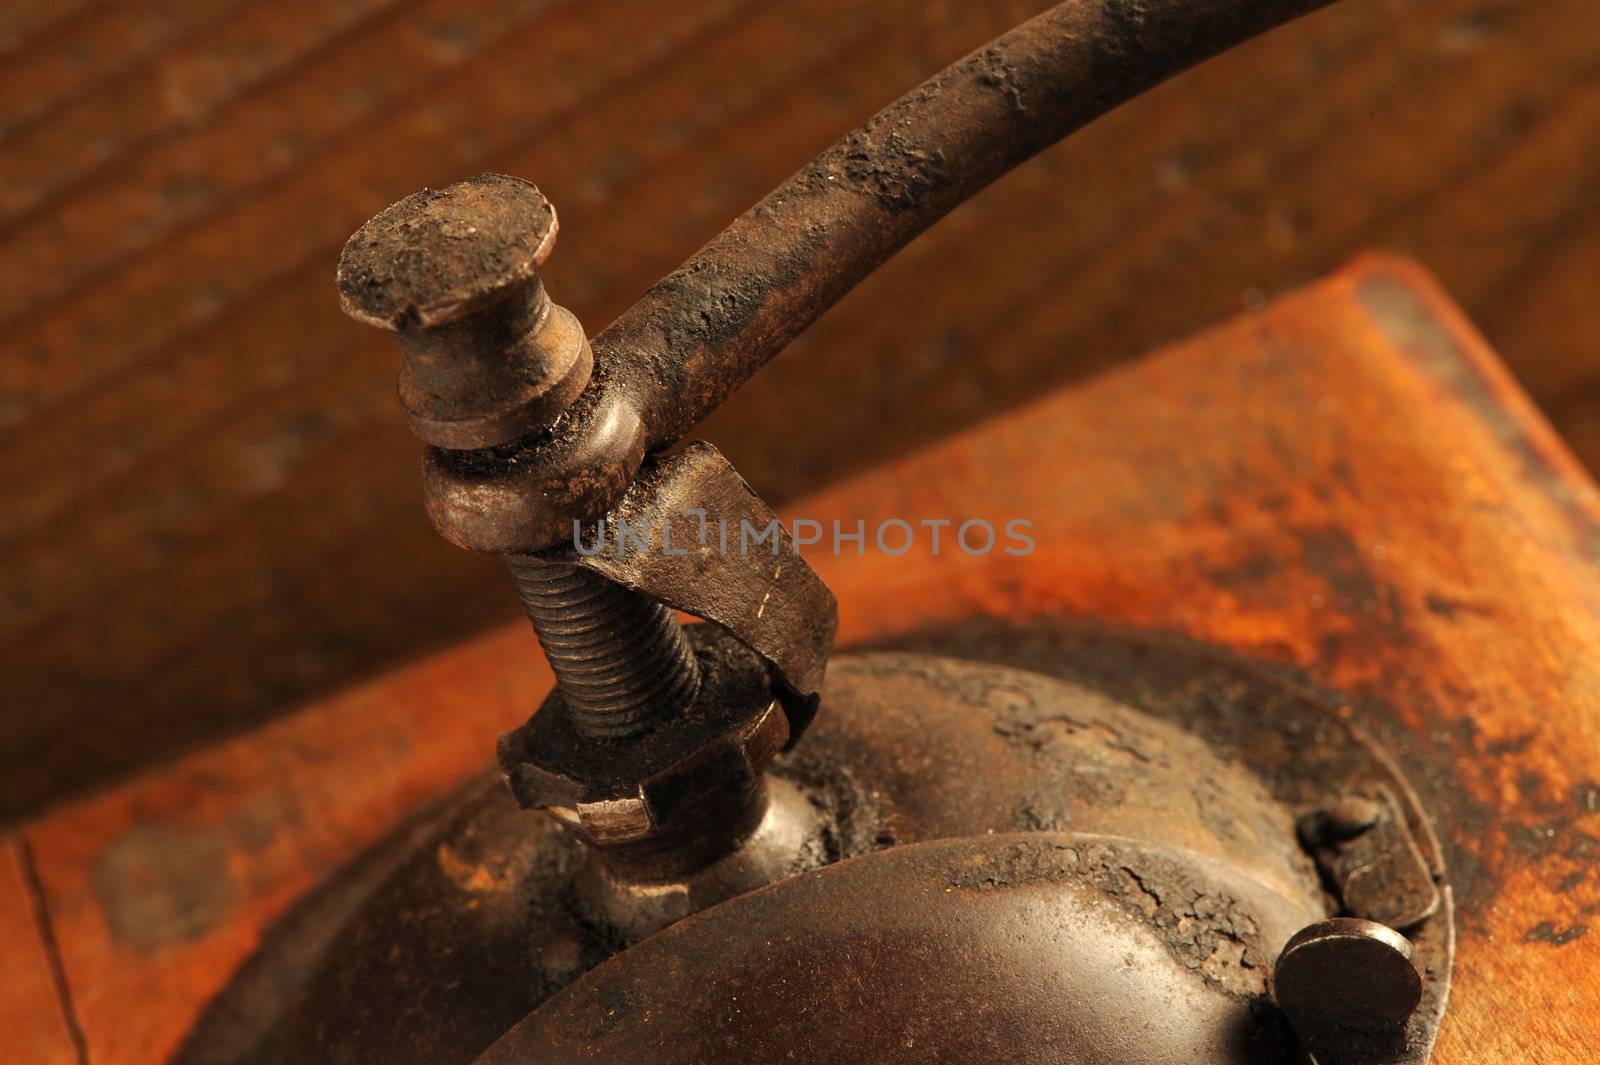 detail of Vintage manual coffee grinder by stokkete